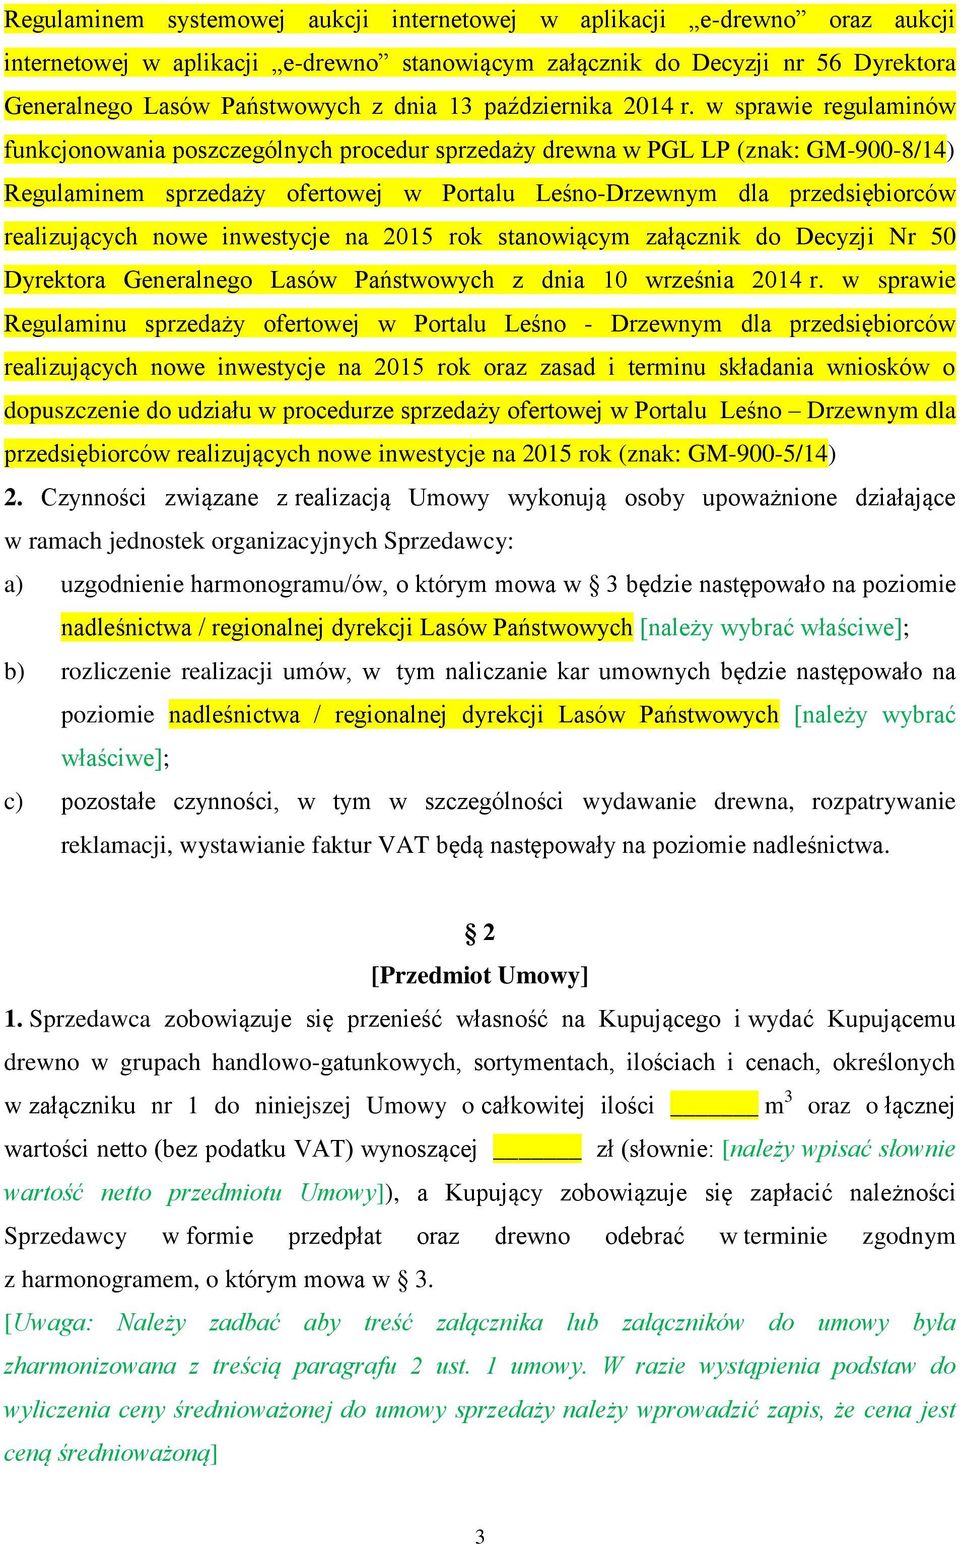 w sprawie regulaminów funkcjonowania poszczególnych procedur sprzedaży drewna w PGL LP (znak: GM-900-8/14) Regulaminem sprzedaży ofertowej w Portalu Leśno-Drzewnym dla przedsiębiorców realizujących